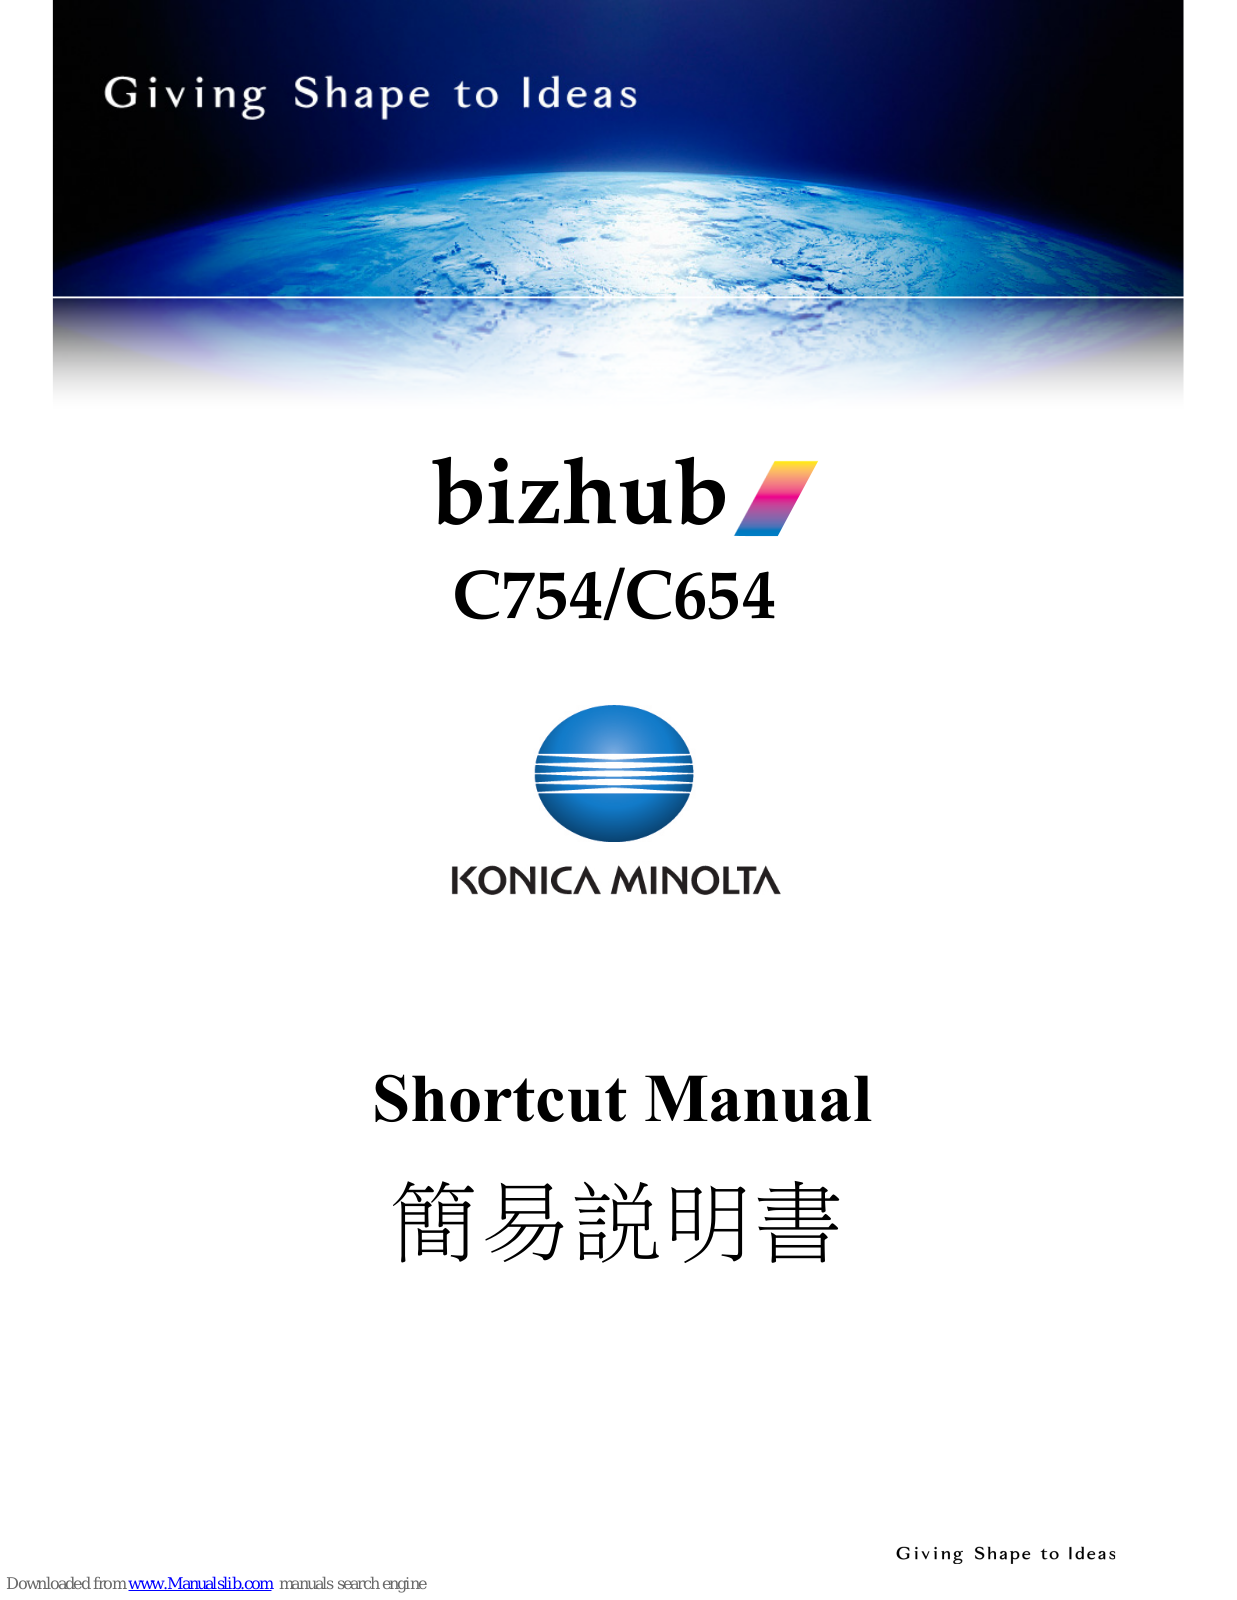 Konica Minolta bizhub C754, bizhub C654, bizhub C364, bizhubC284, bizhub C224 Shortcut Manual